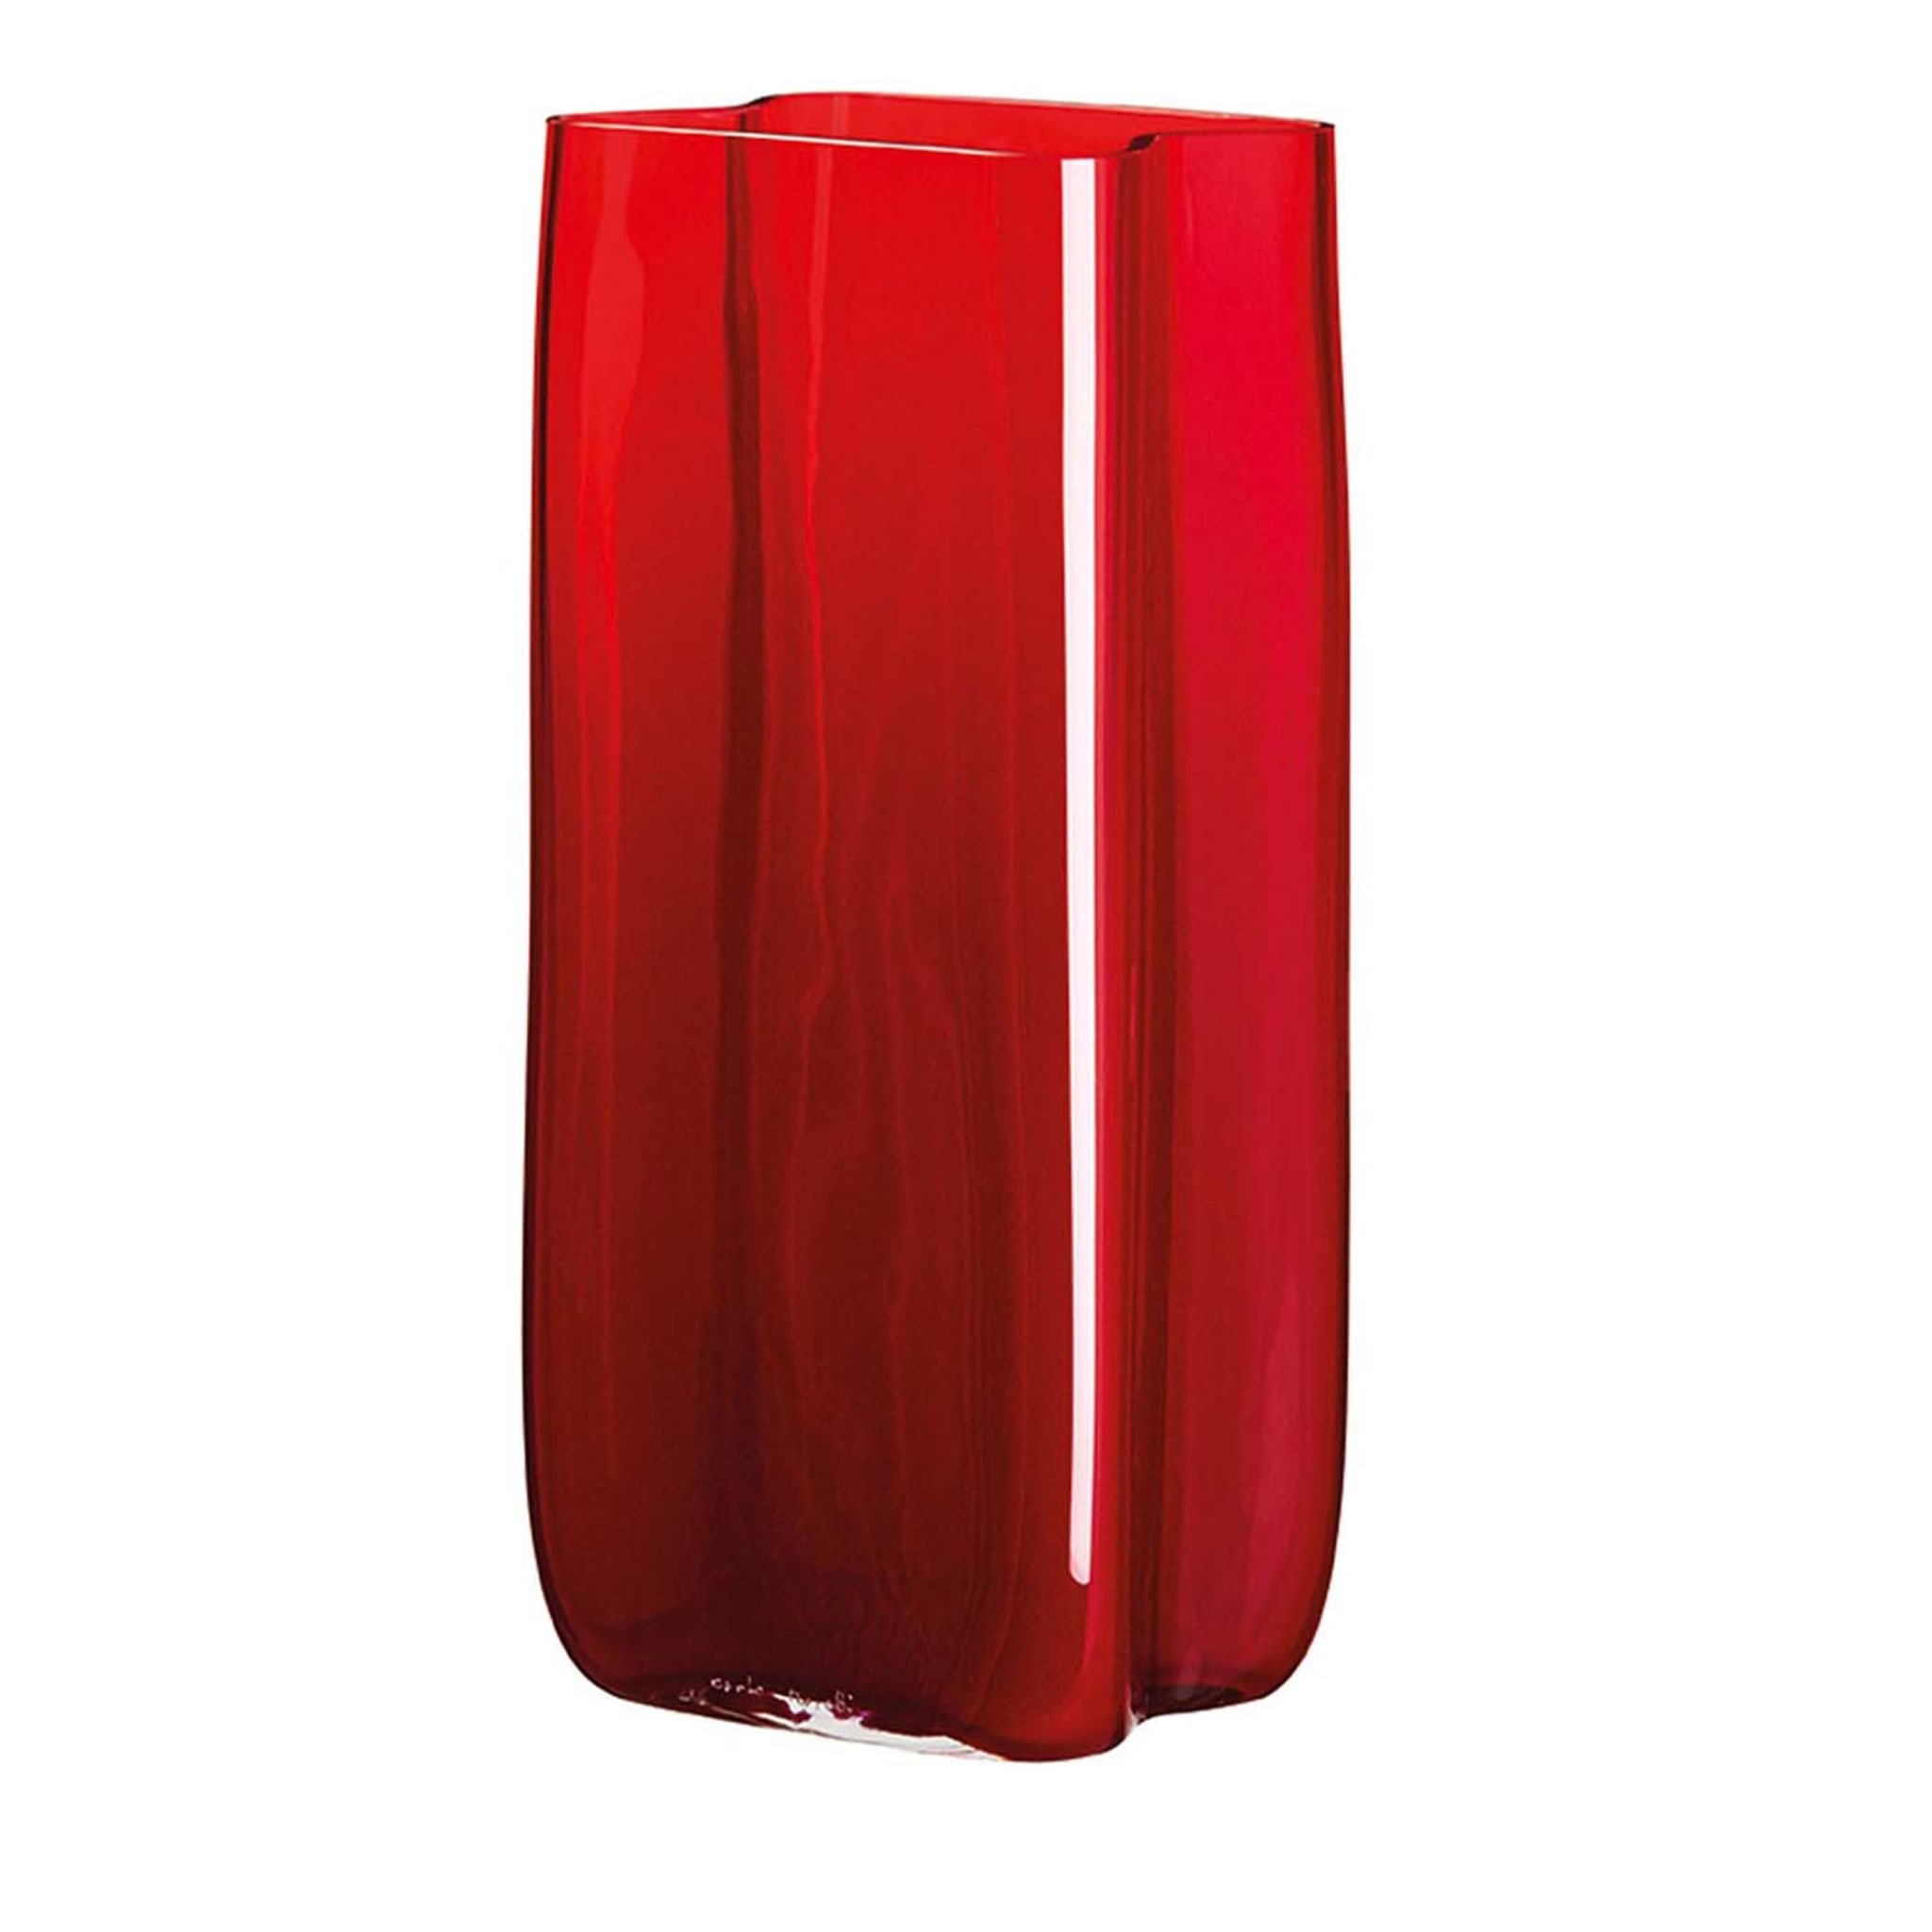 Vase Bosco, grand vase rouge à volants, de Carlo Moretti - Vue principale